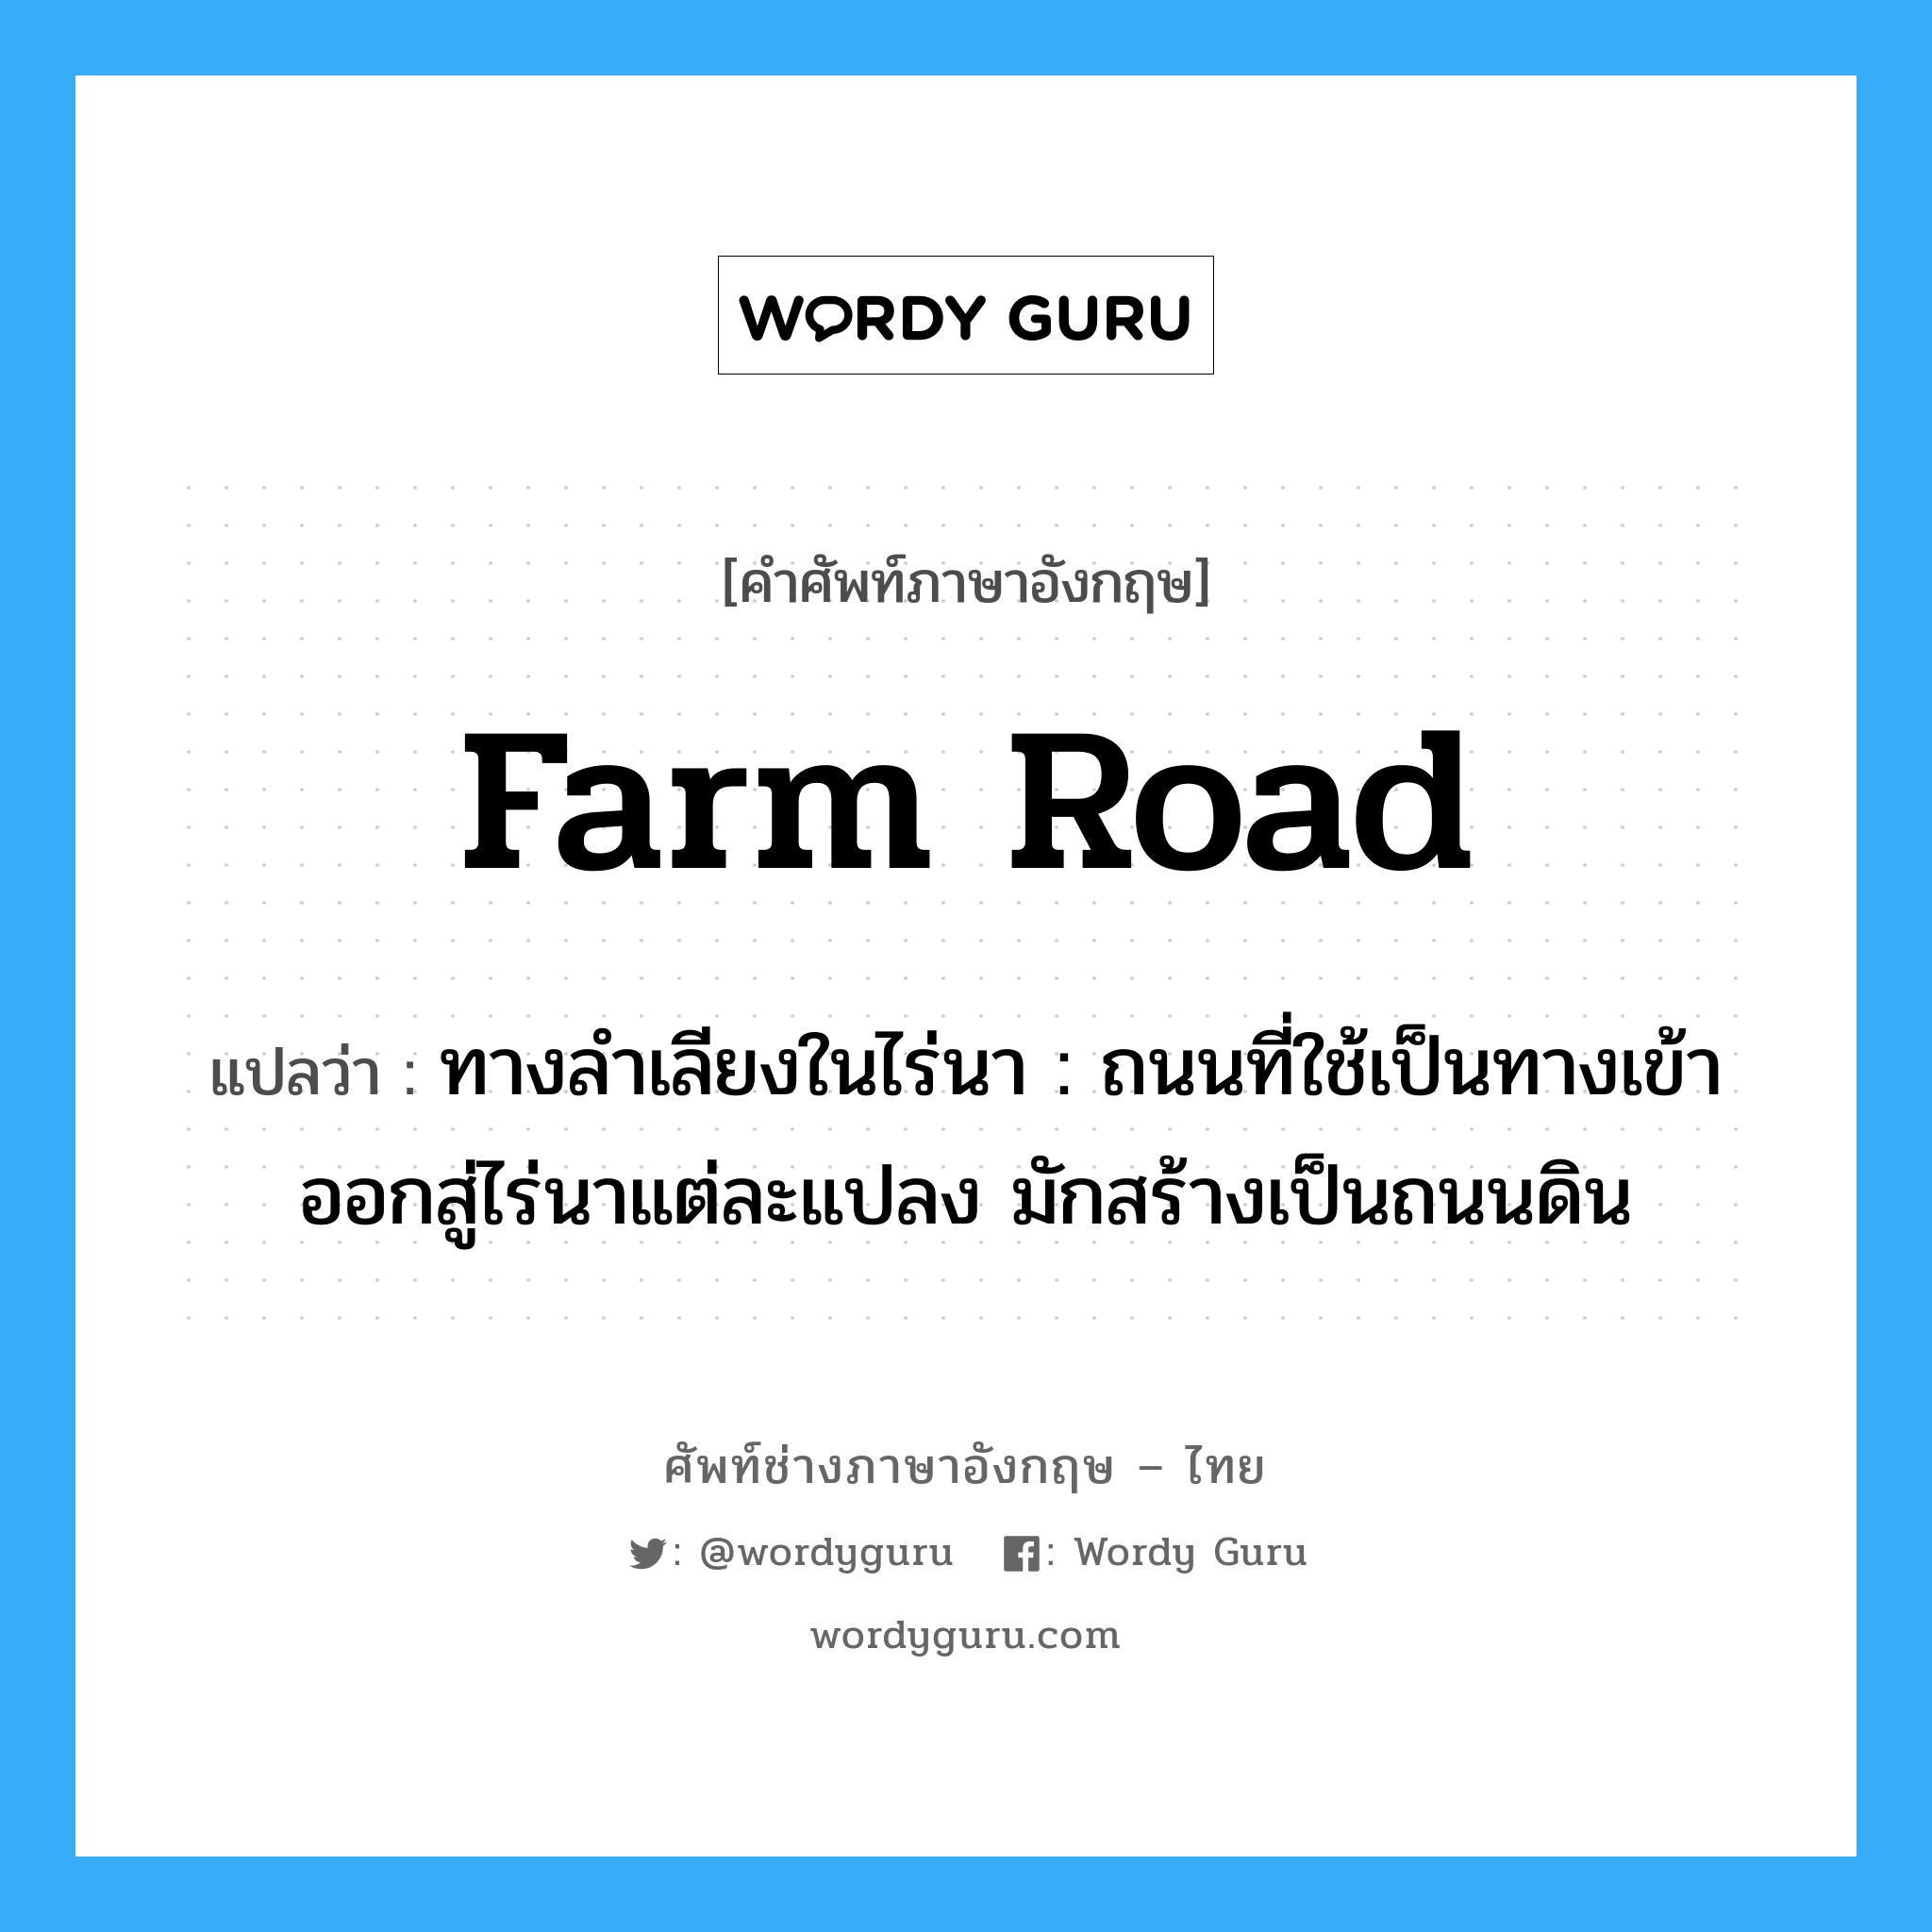 farm road แปลว่า?, คำศัพท์ช่างภาษาอังกฤษ - ไทย farm road คำศัพท์ภาษาอังกฤษ farm road แปลว่า ทางลำเลียงในไร่นา : ถนนที่ใช้เป็นทางเข้าออกสู่ไร่นาแต่ละแปลง มักสร้างเป็นถนนดิน